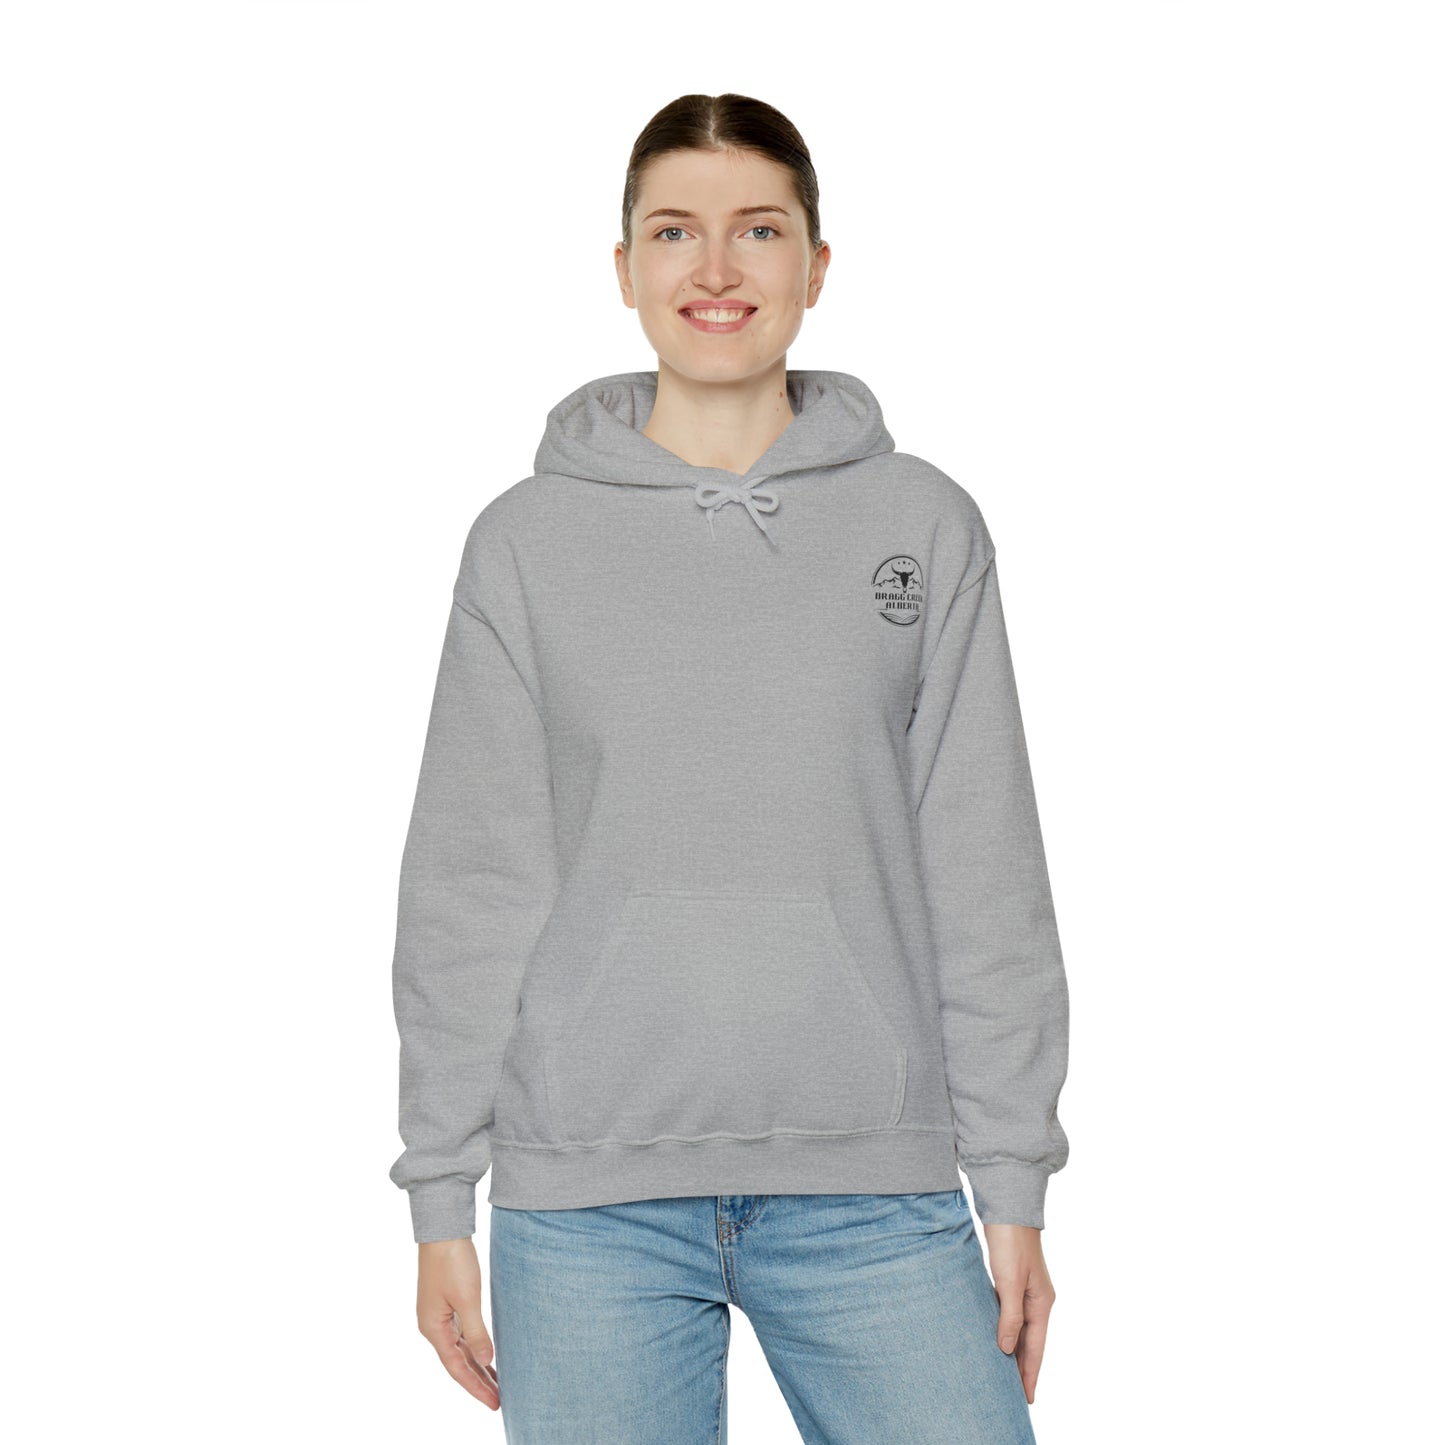 Bragg Creek Alberta Hoodie- Unisex Heavy Blend™ Hooded Sweatshirt